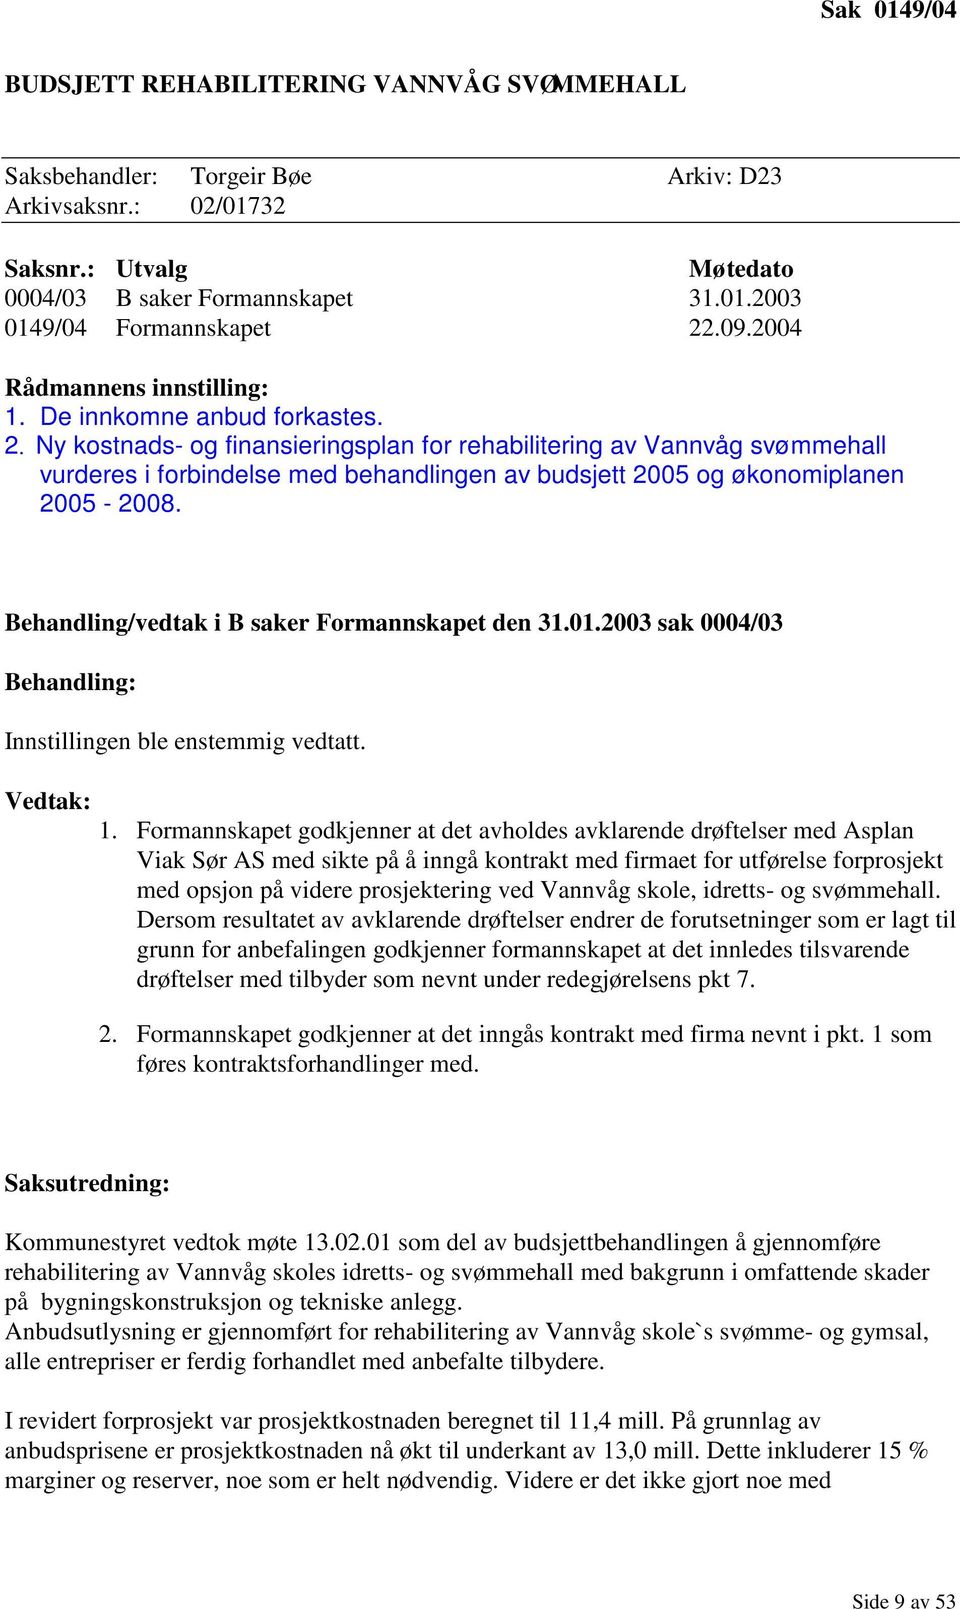 Ny kostnads- og finansieringsplan for rehabilitering av Vannvåg svømmehall vurderes i forbindelse med behandlingen av budsjett 2005 og økonomiplanen 2005-2008.